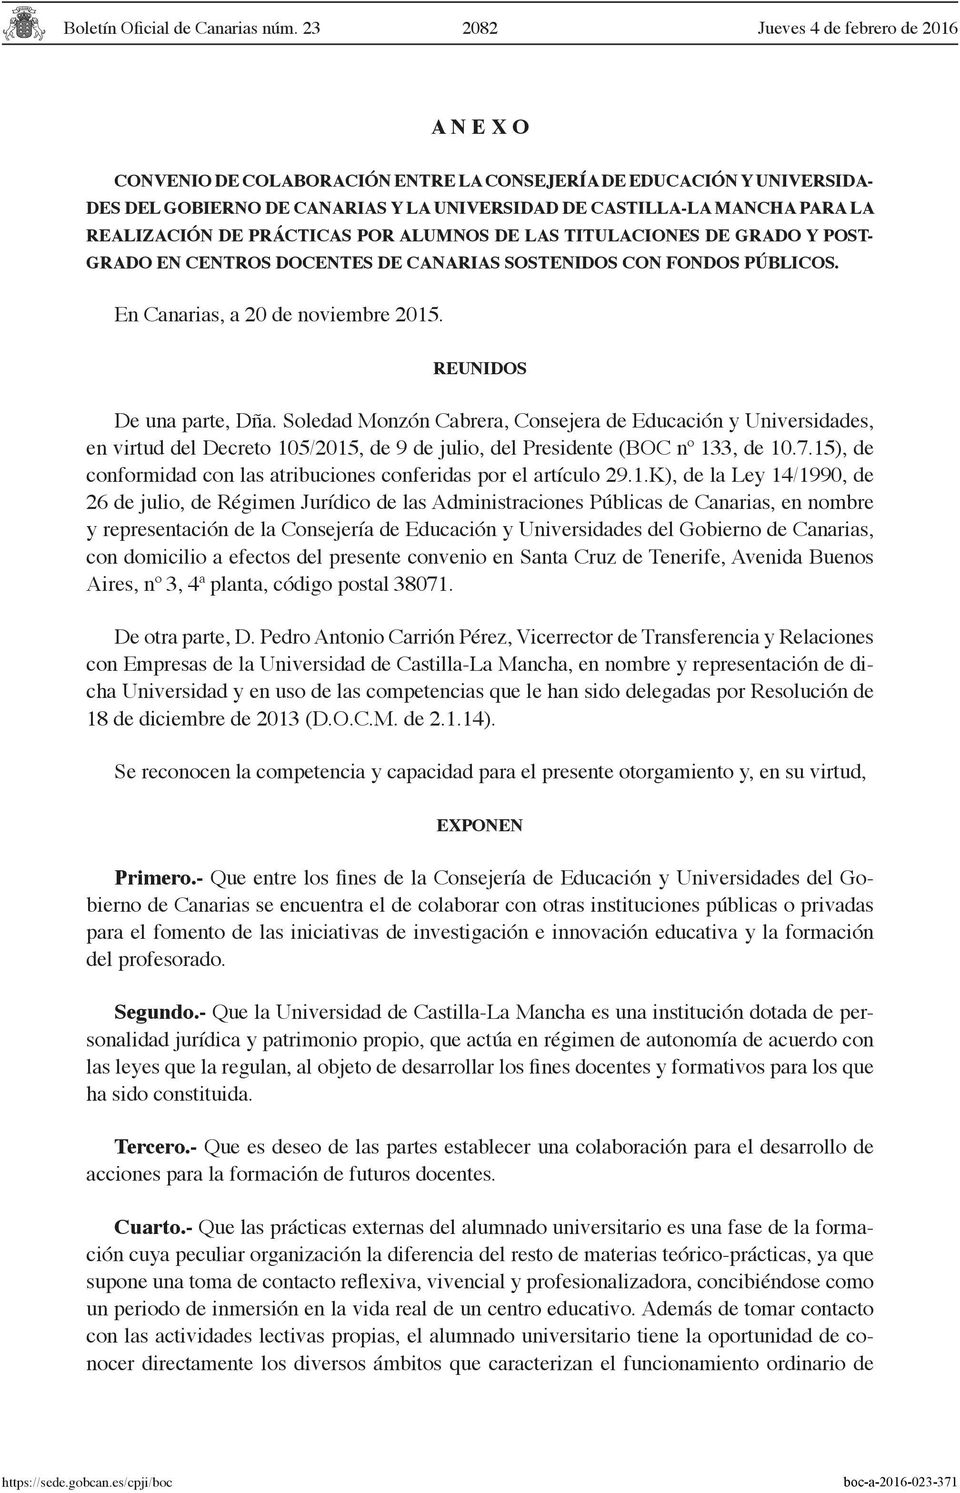 Soledad Monzón Cabrera, Consejera de Educación y Universidades, en virtud del Decreto 105/2015, de 9 de julio, del Presidente (BOC nº 133, de 10.7.